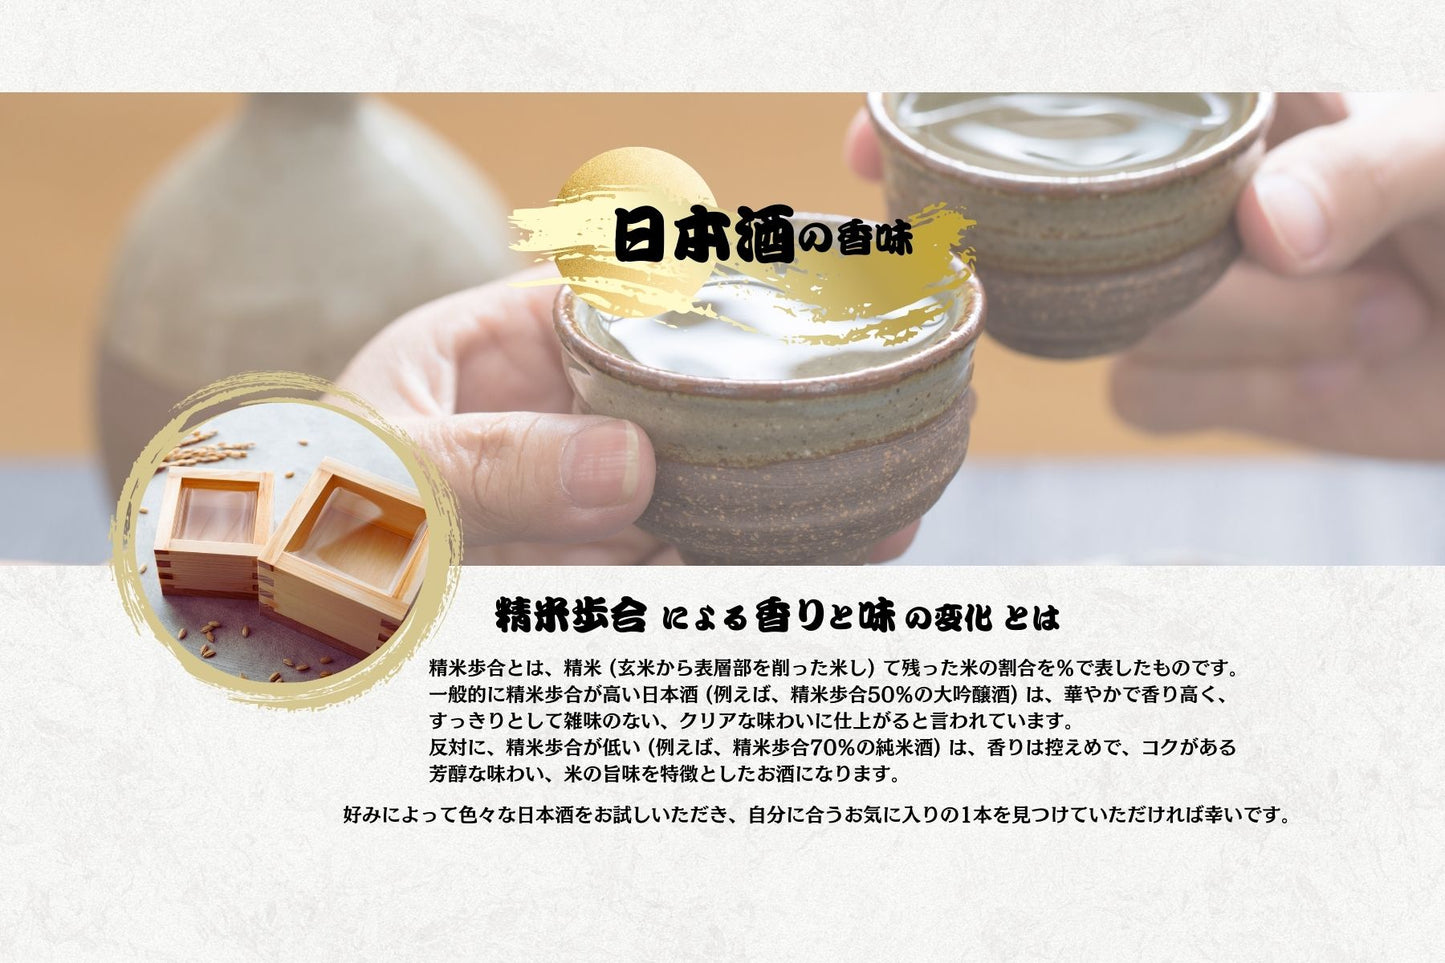 【2本セット】白神山地の四季 特別純米酒 720ml (52007)